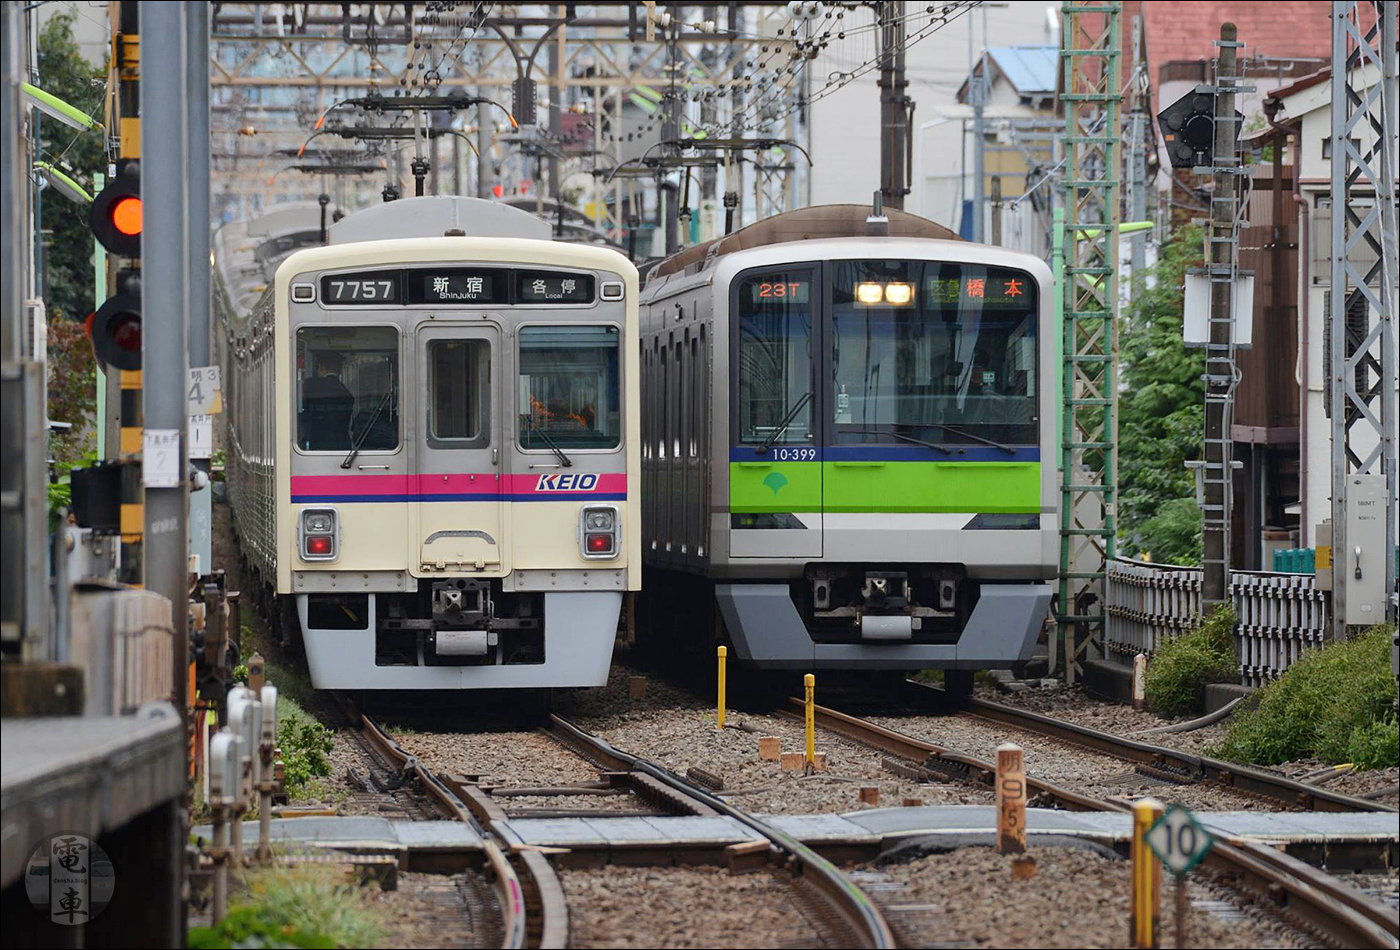 Keio 7000-es sorozat és Toei 10-300-as sorozat a Keio vonalán található Shimo-Takaido állomás közelében.